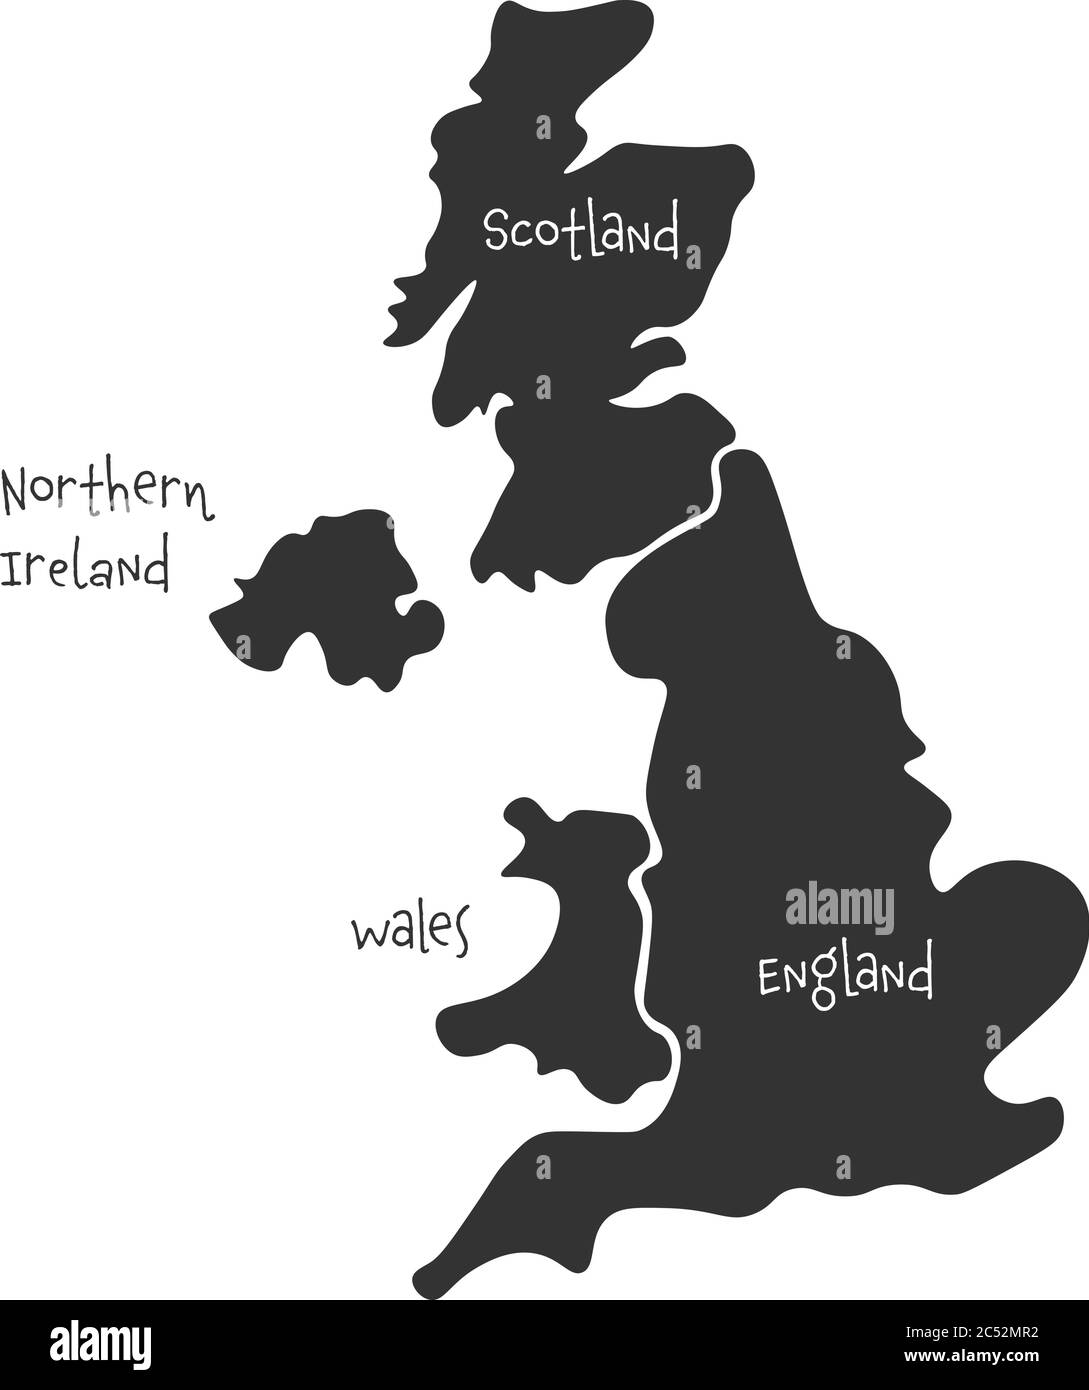 Royaume-Uni, alias Royaume-Uni, de Grande-Bretagne et d'Irlande du Nord carte vierge dessinée à la main. Divisé en quatre pays : l'Angleterre, le pays de Galles, l'Écosse et le ni. Illustration simple à vecteur plat. Illustration de Vecteur